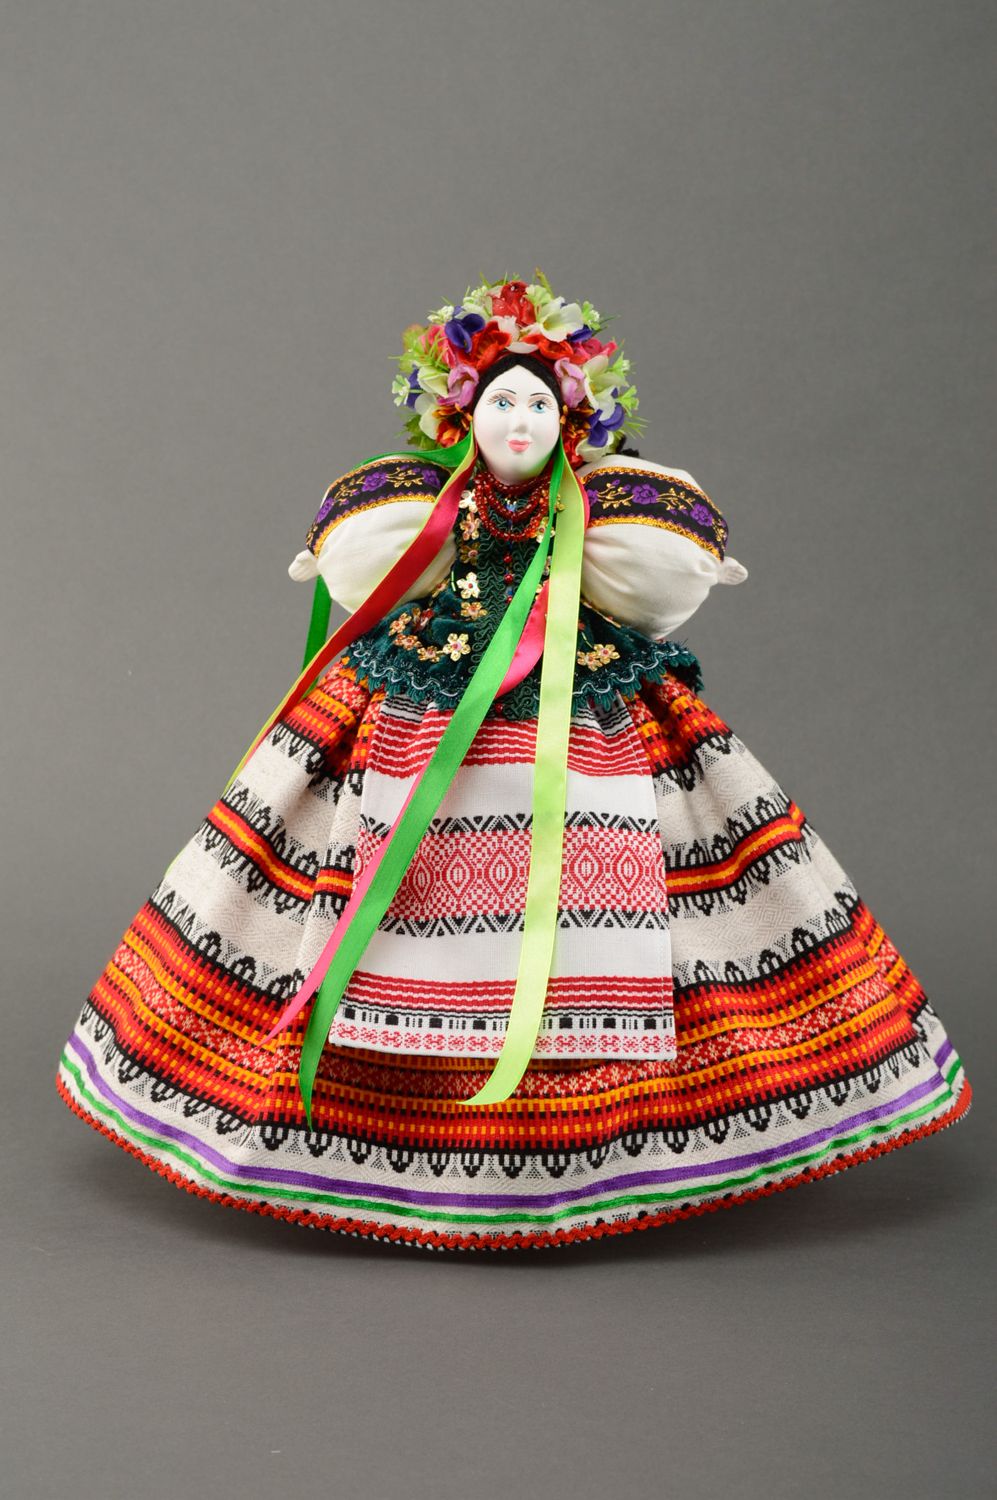 Couvre-théière artisanal en tissu de style ukrainien photo 1